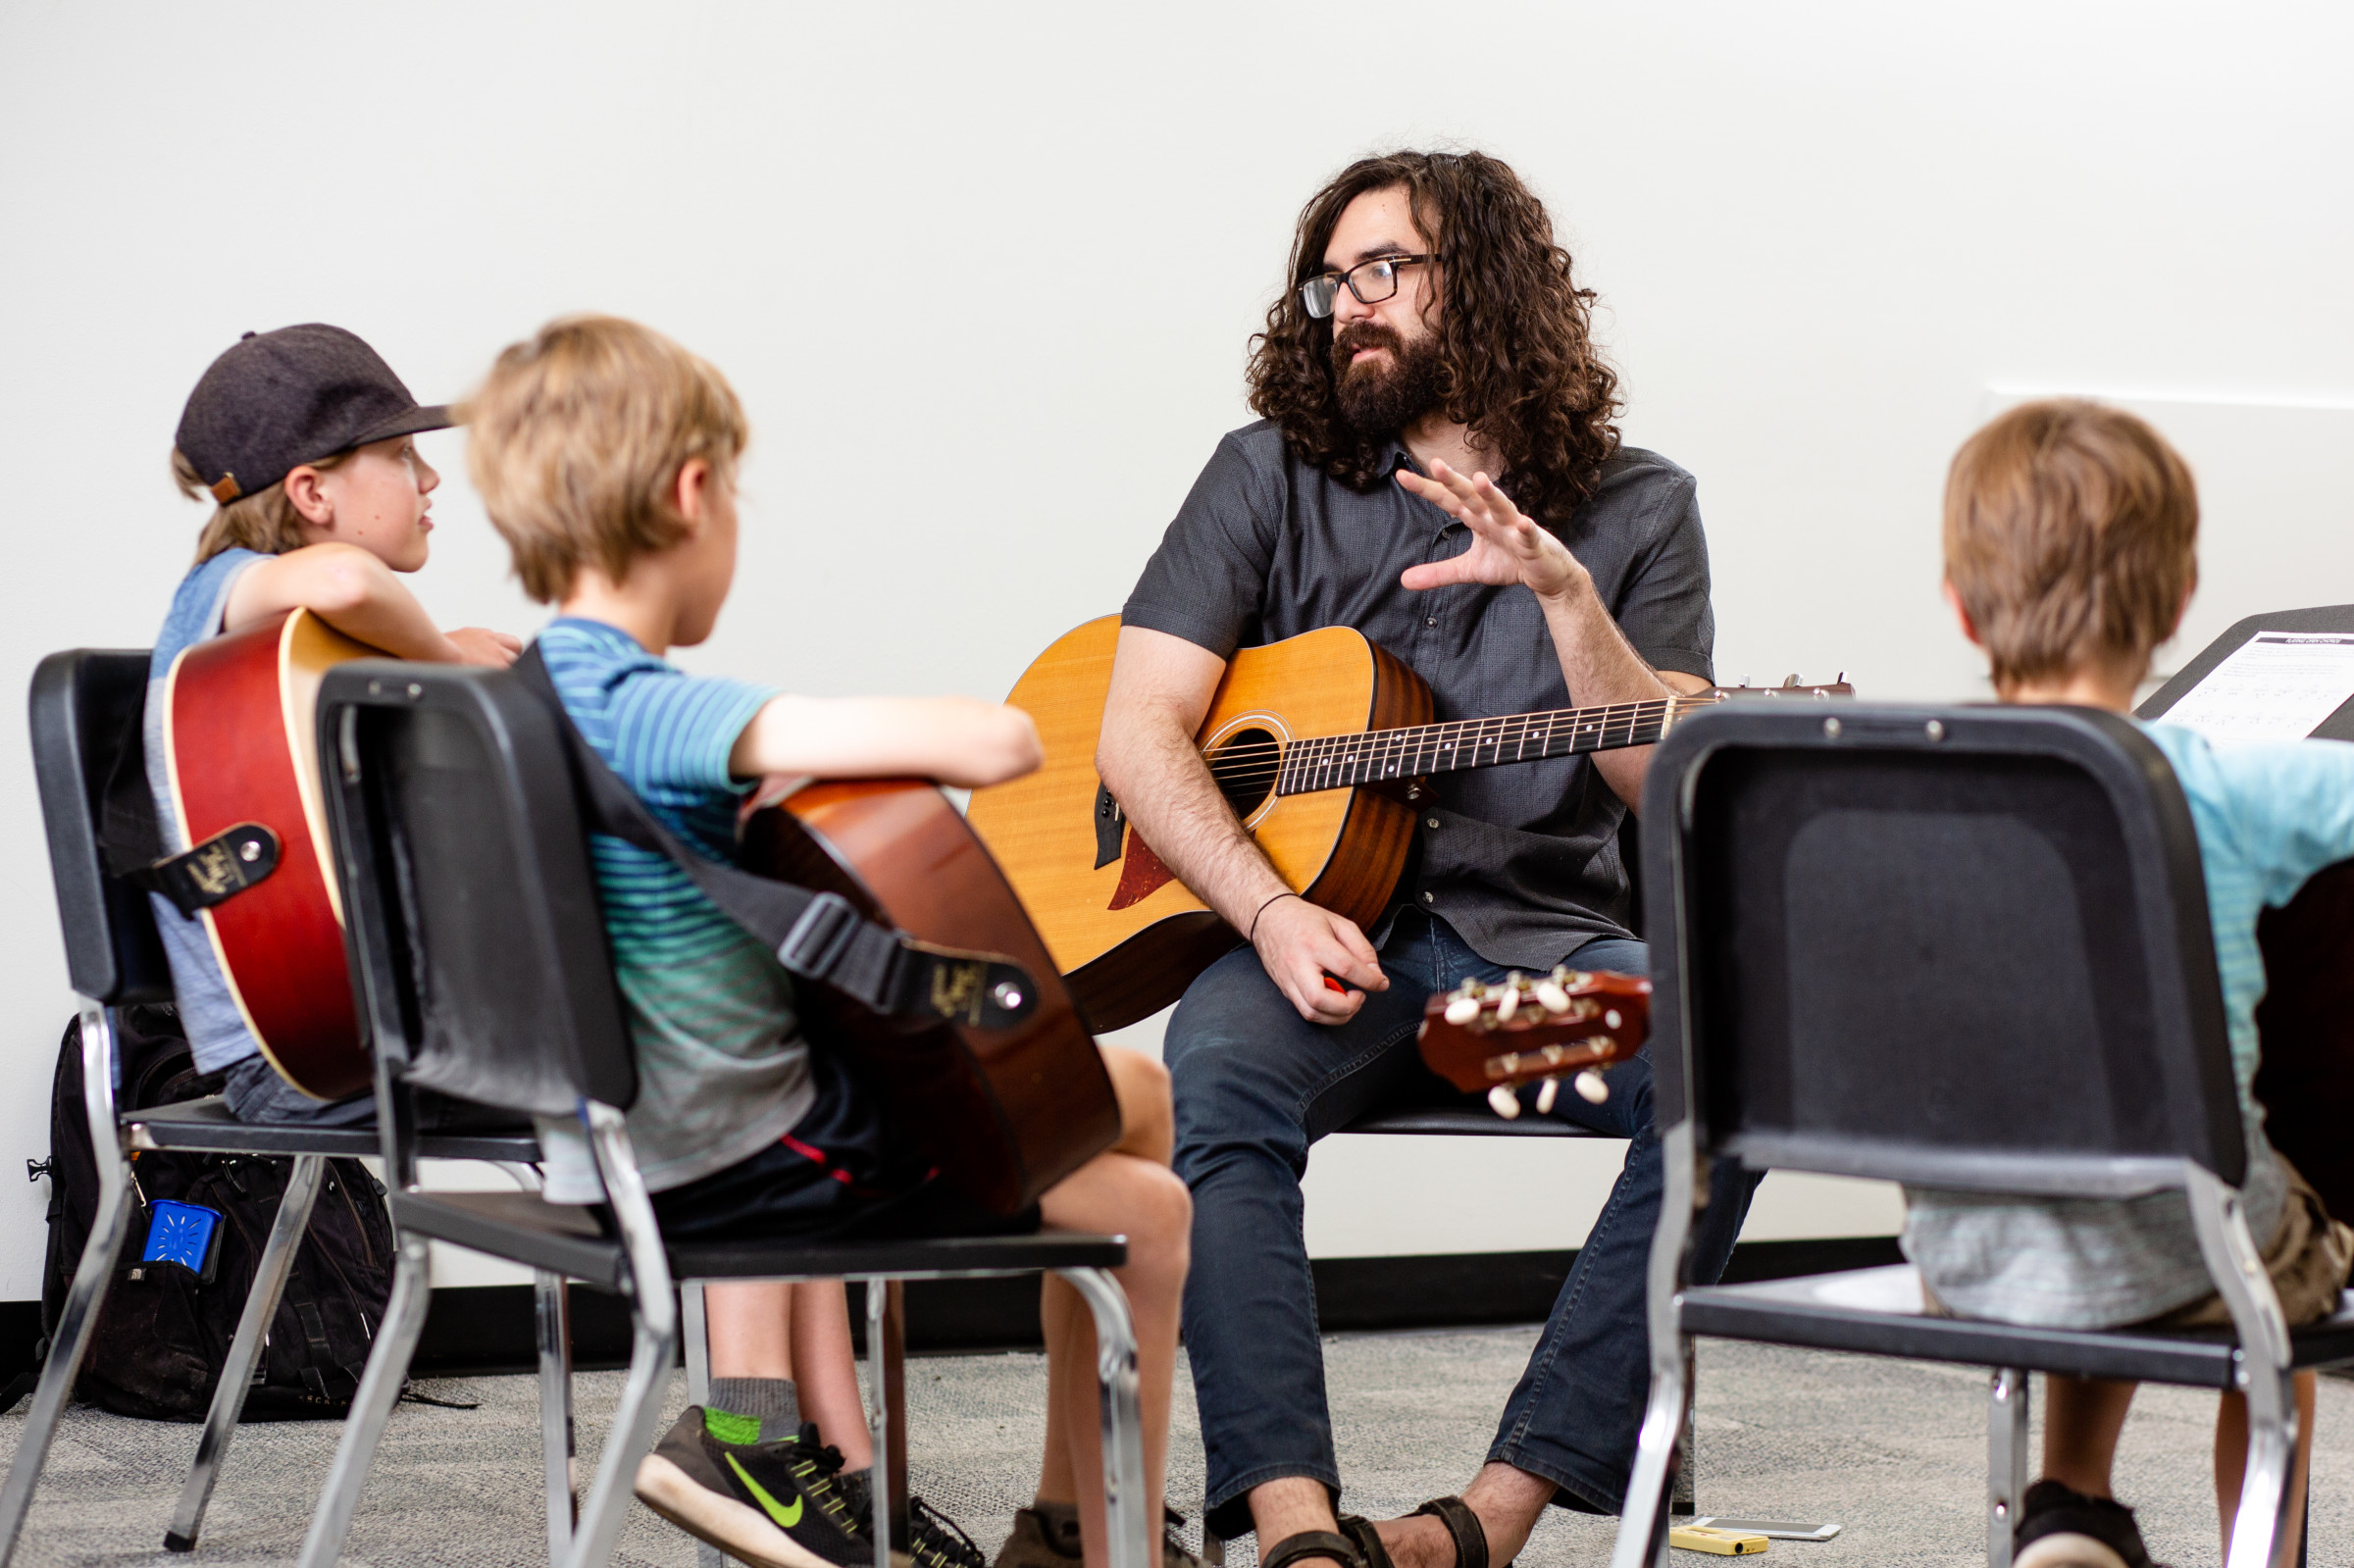 Children learning guitar from tutor.